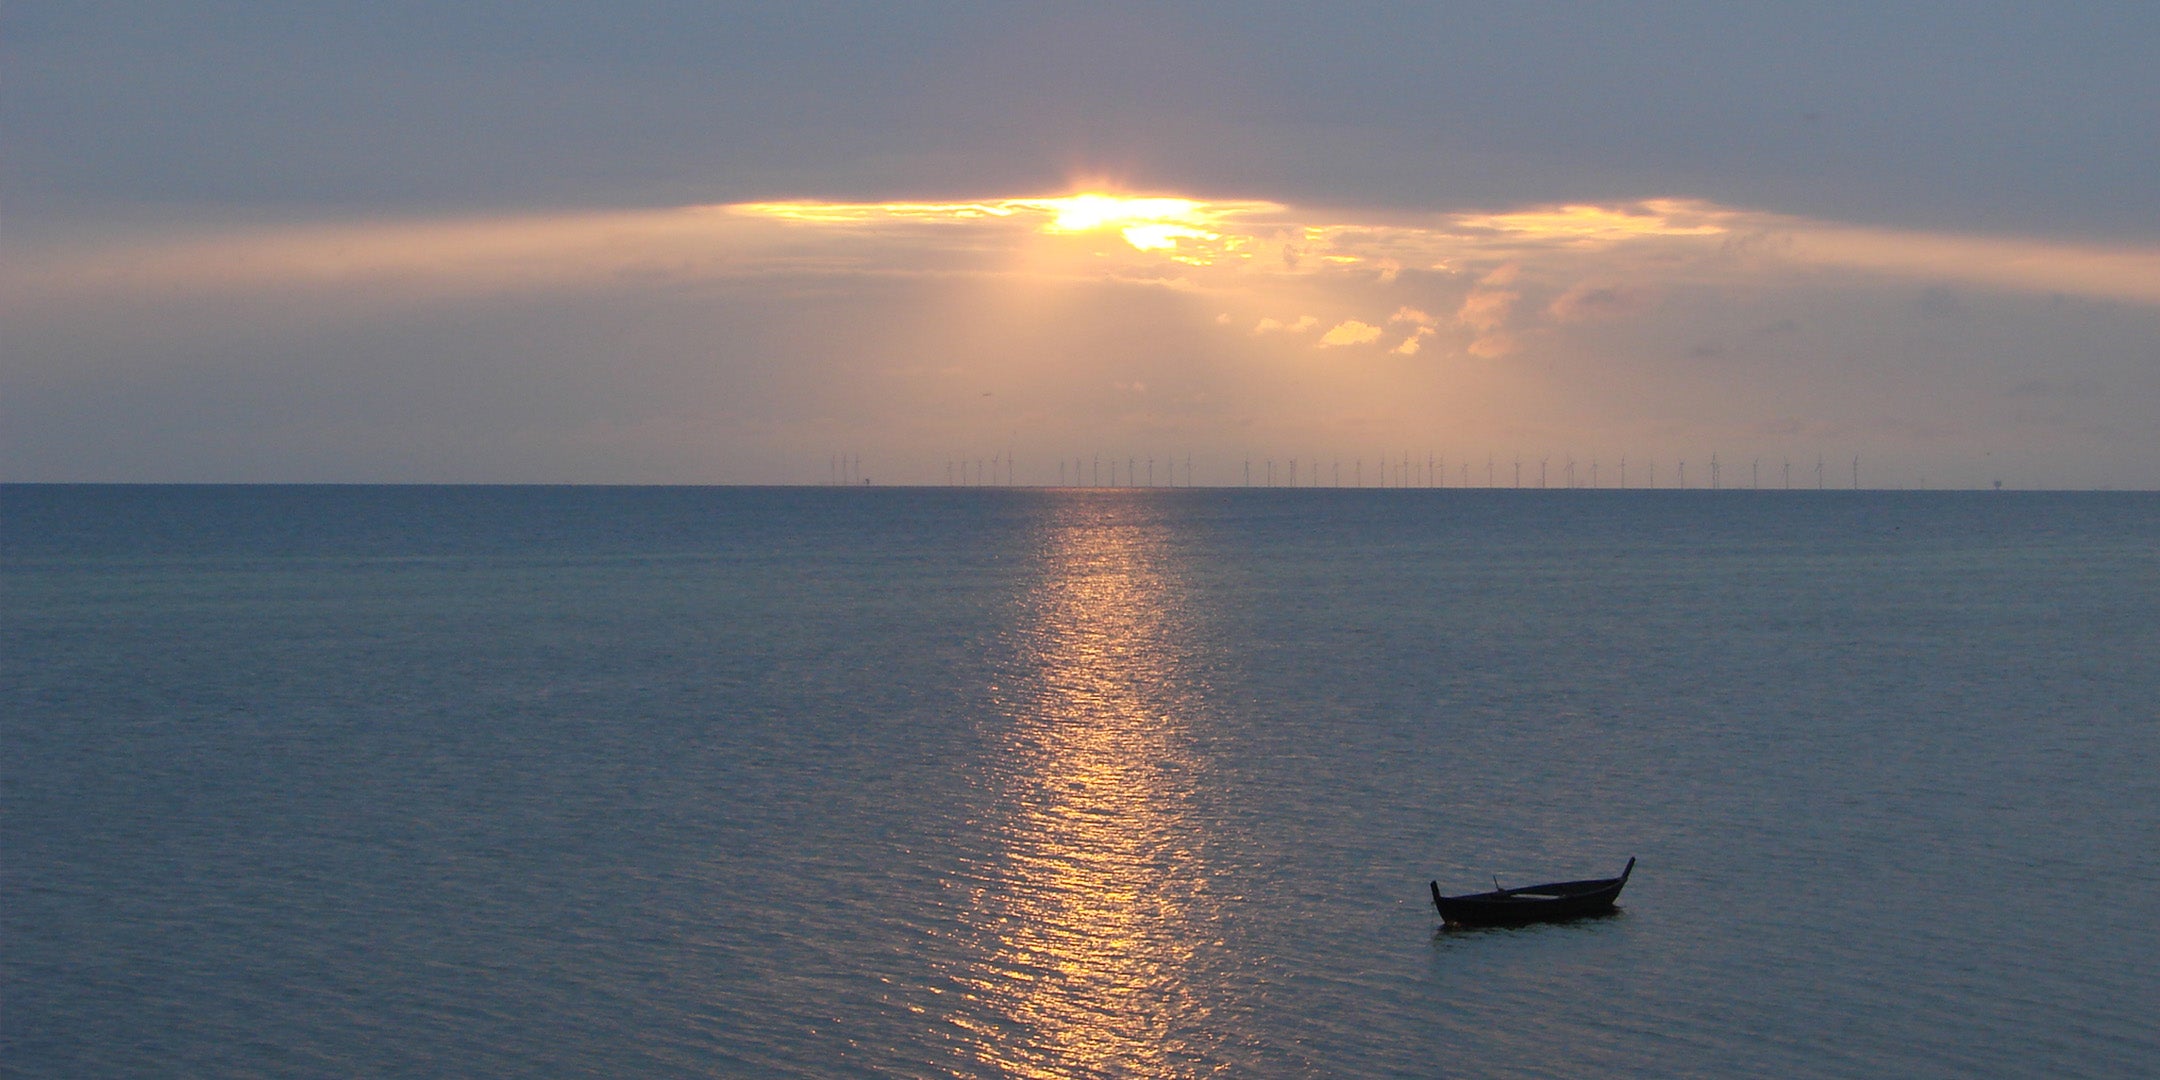 Solnedgång över Öresund. Blått hav och mulen himmel möts. Molnen spricker upp och ljuset kommer igenom. Det speglas i en strimme på havet. I horisonten syns en lång rad vindkraftverk. En öppen träbåt ligger på vattnet